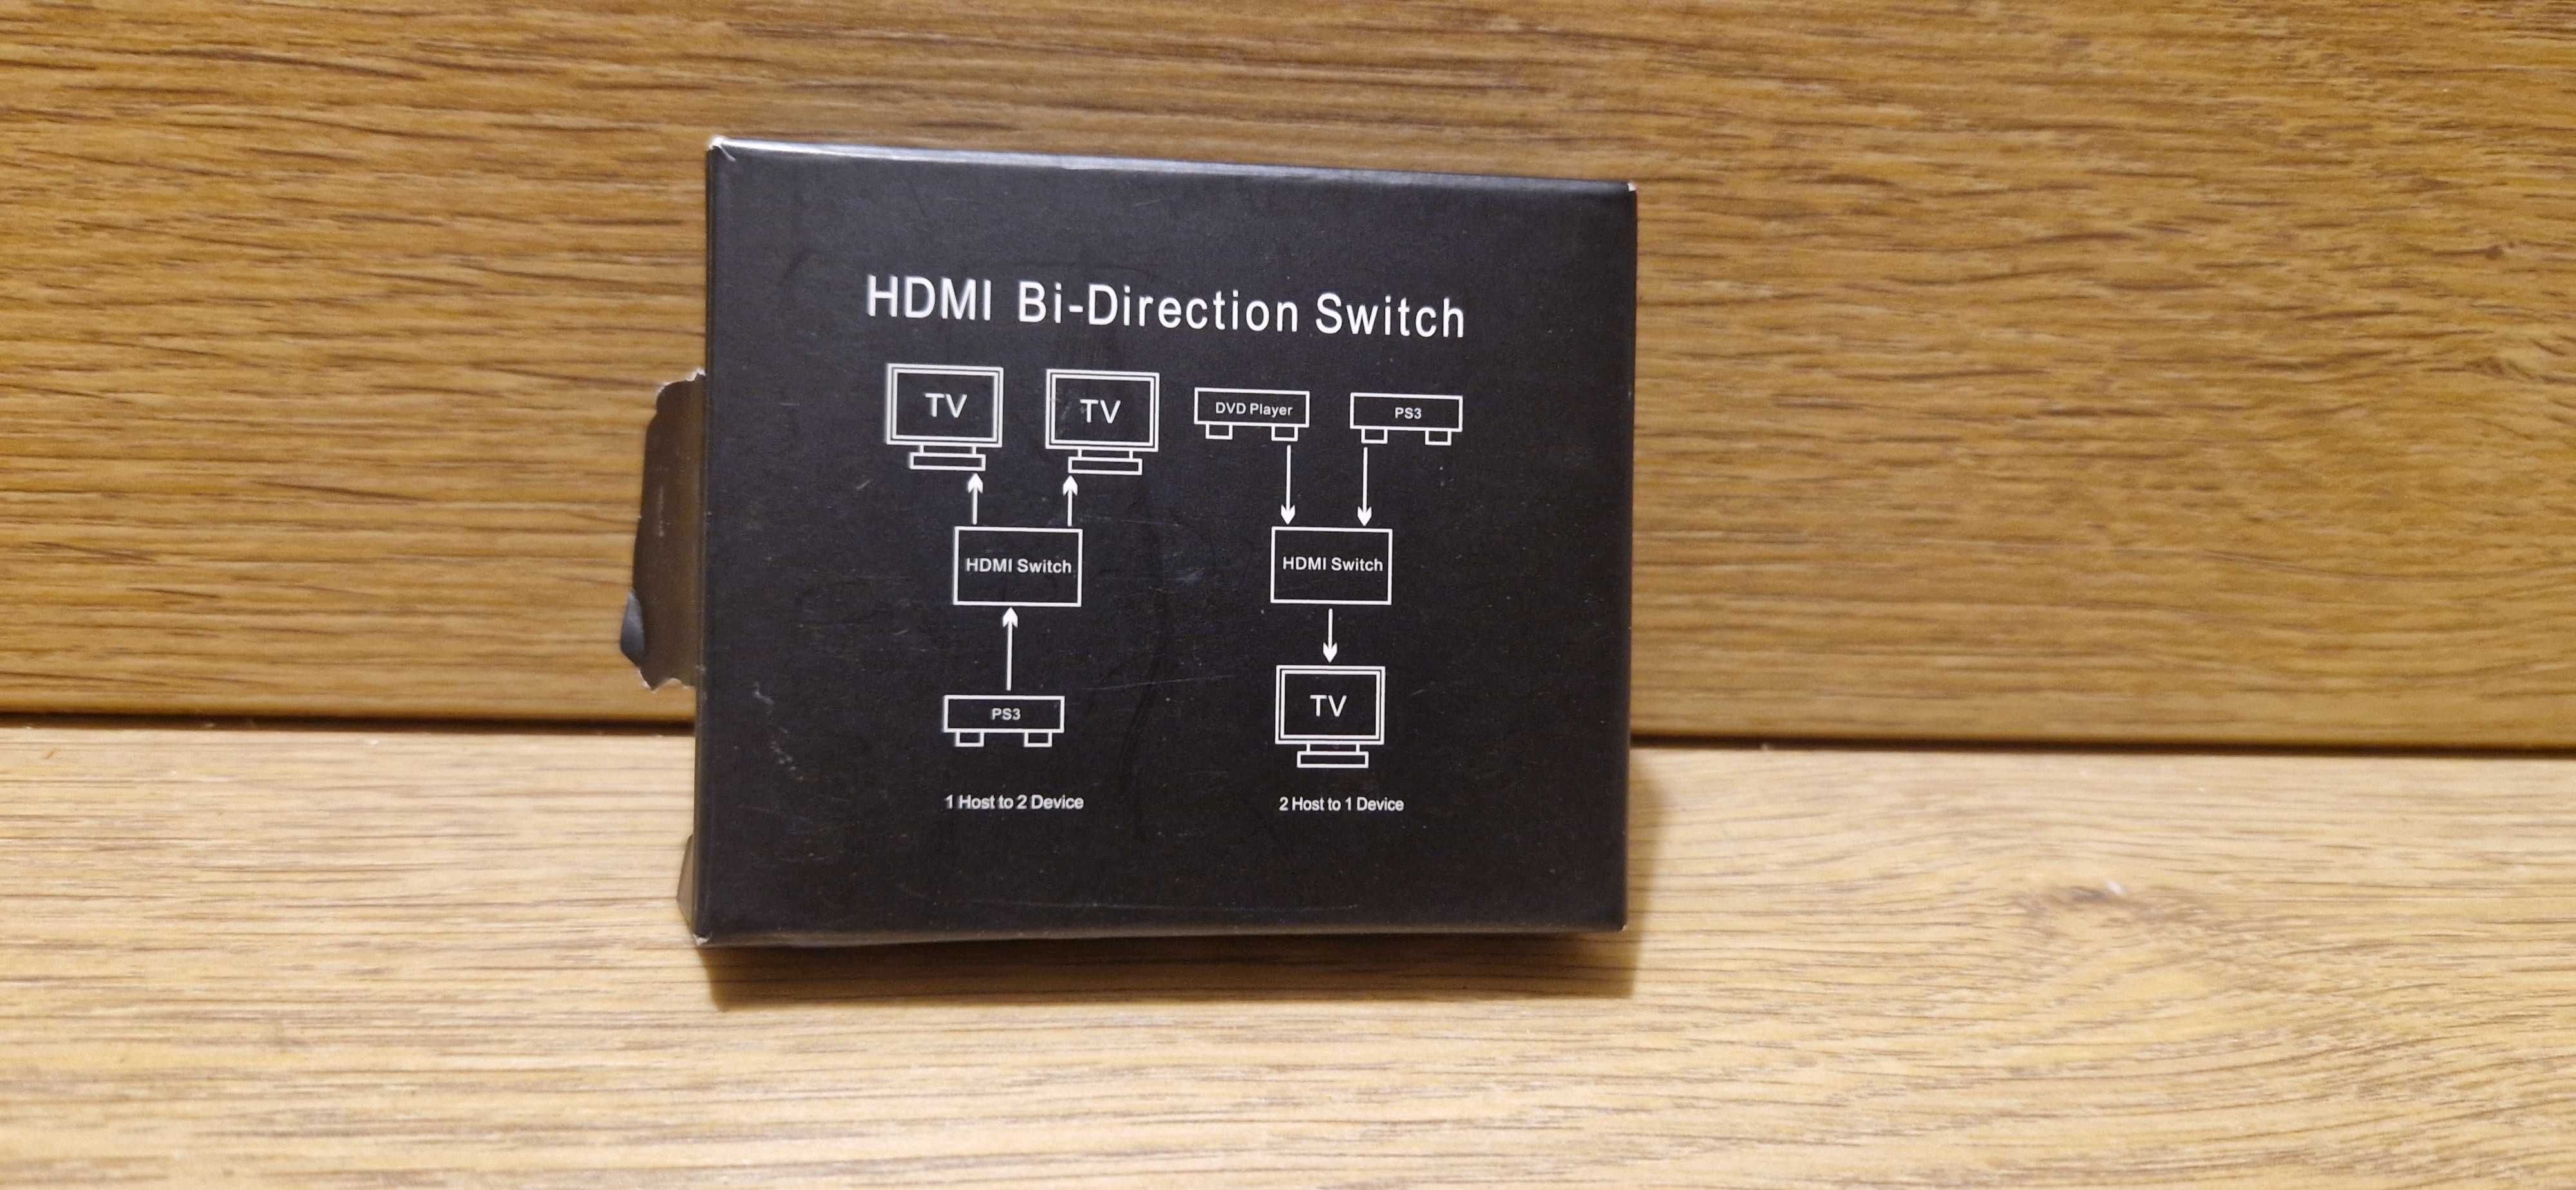 GANA aluminiowy rozdzielacz HDMI 4K, obsługuje formaty HD, 4K